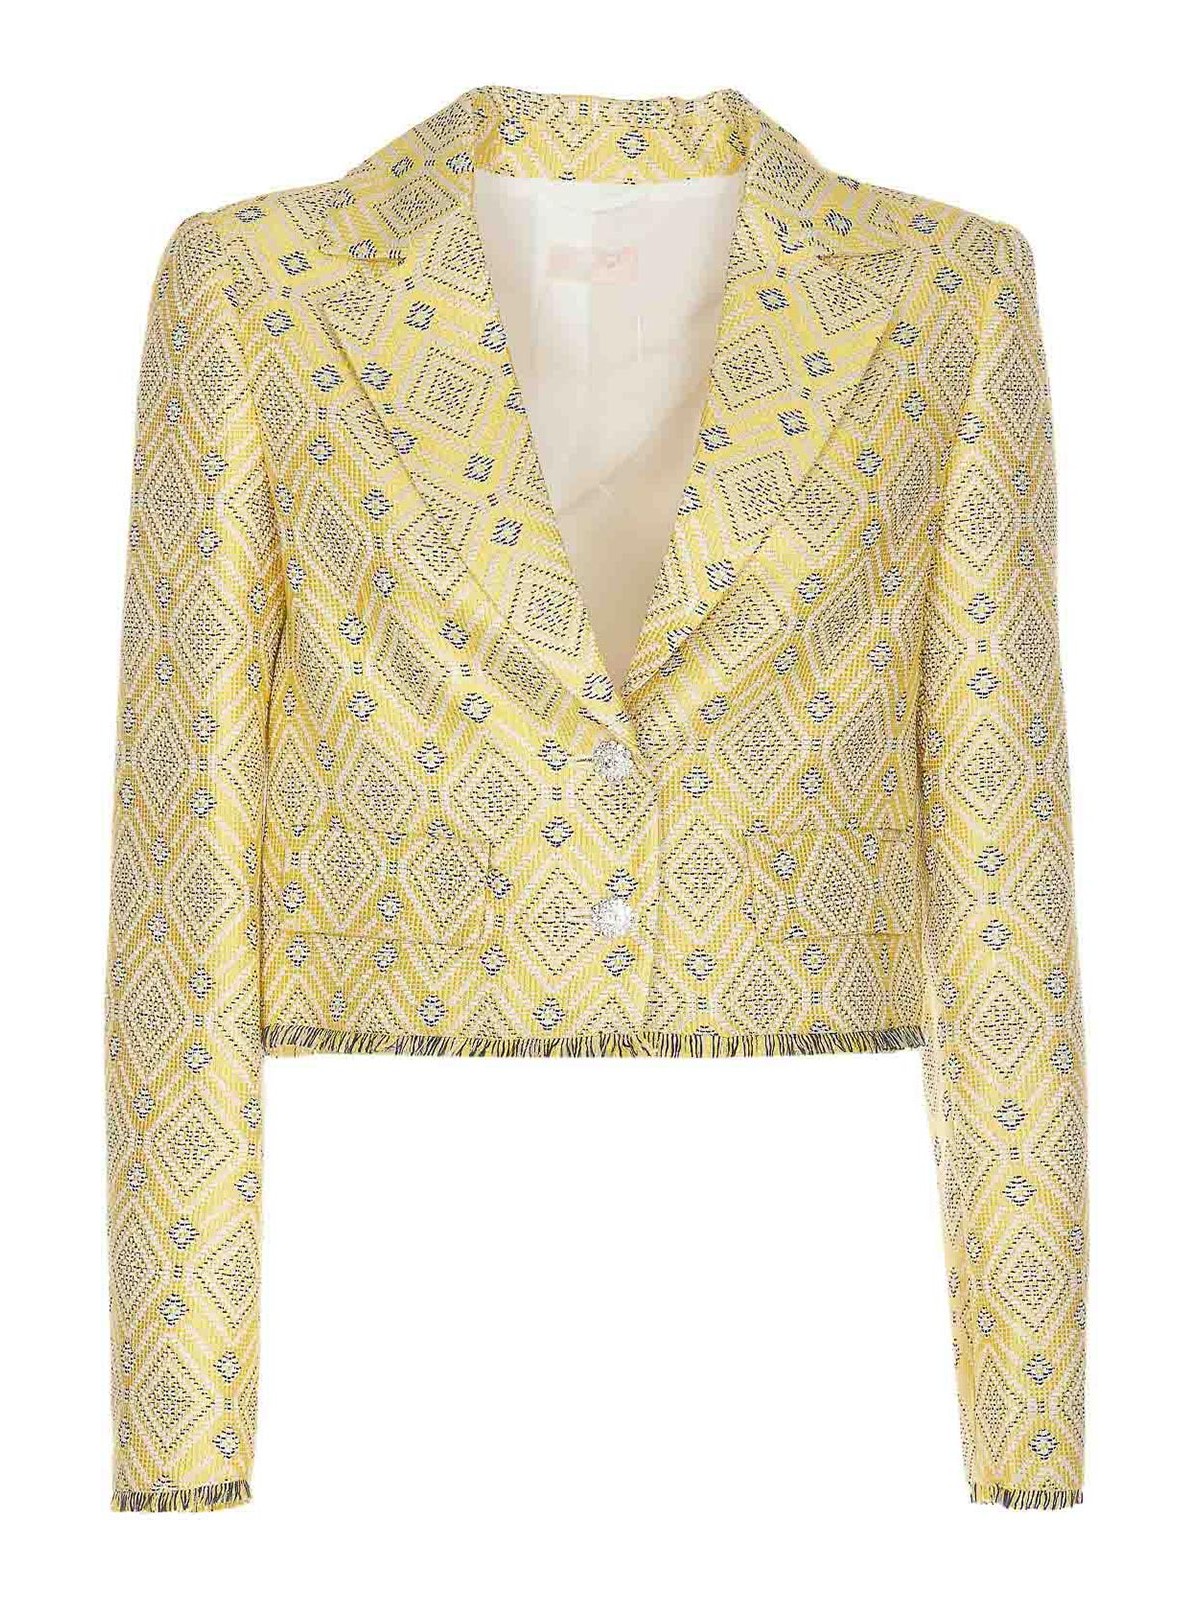 Liu •jo Jacquard Jacket In Yellow